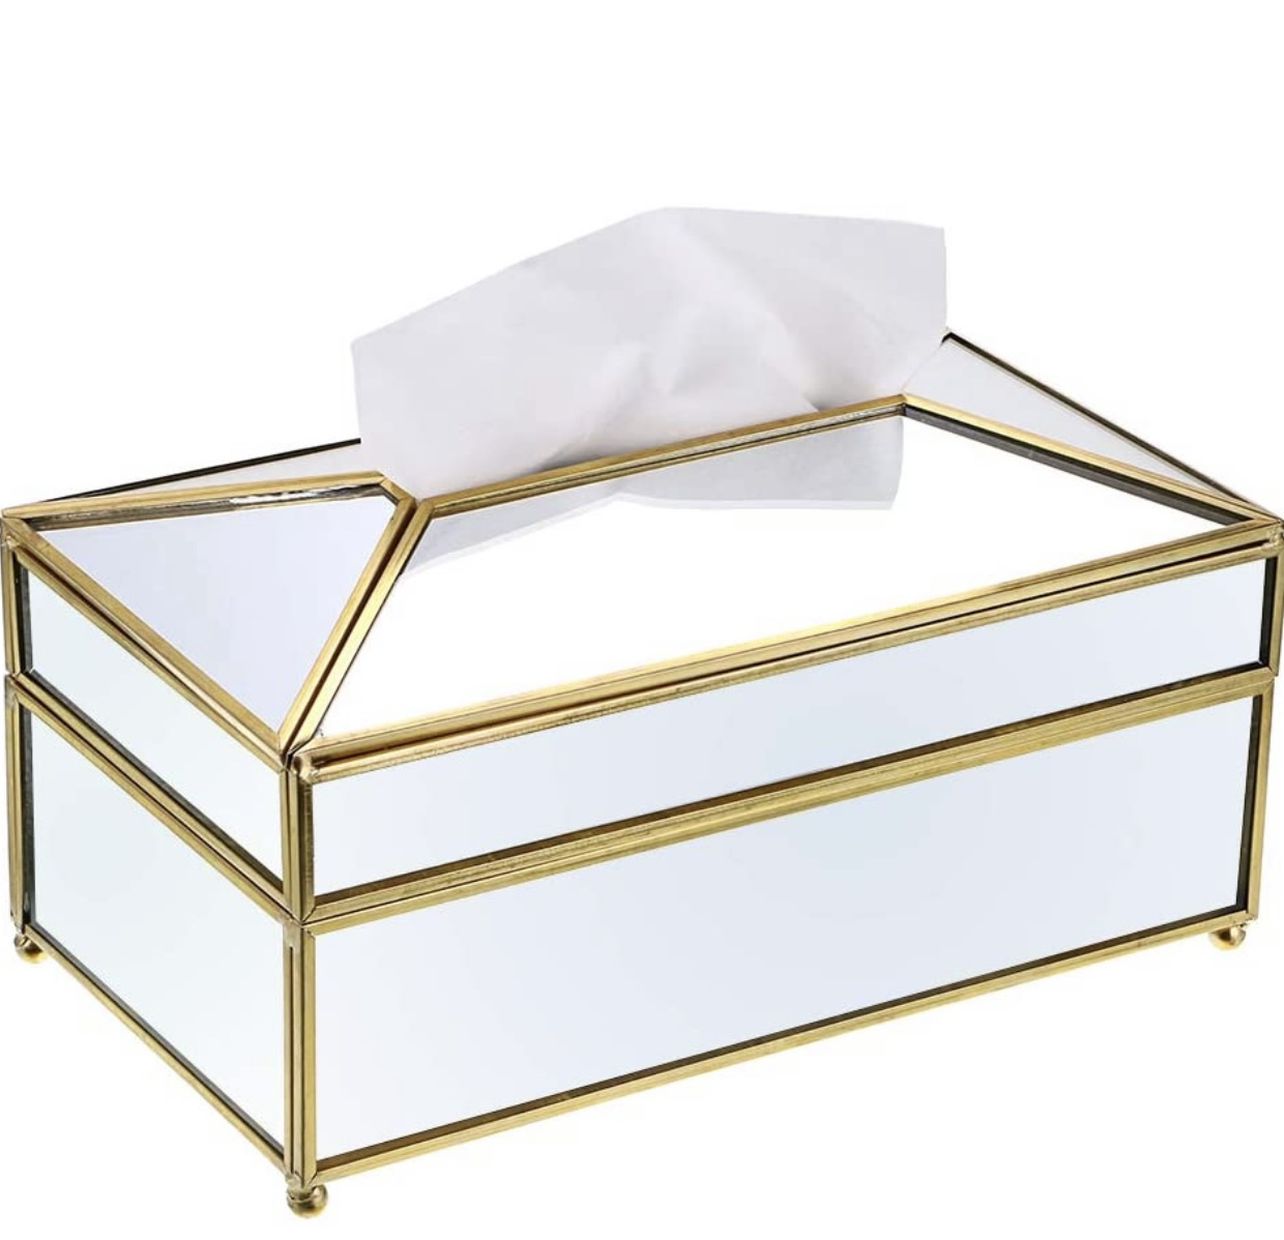 Stunning Antique Gold Mirrored Tissue Box 